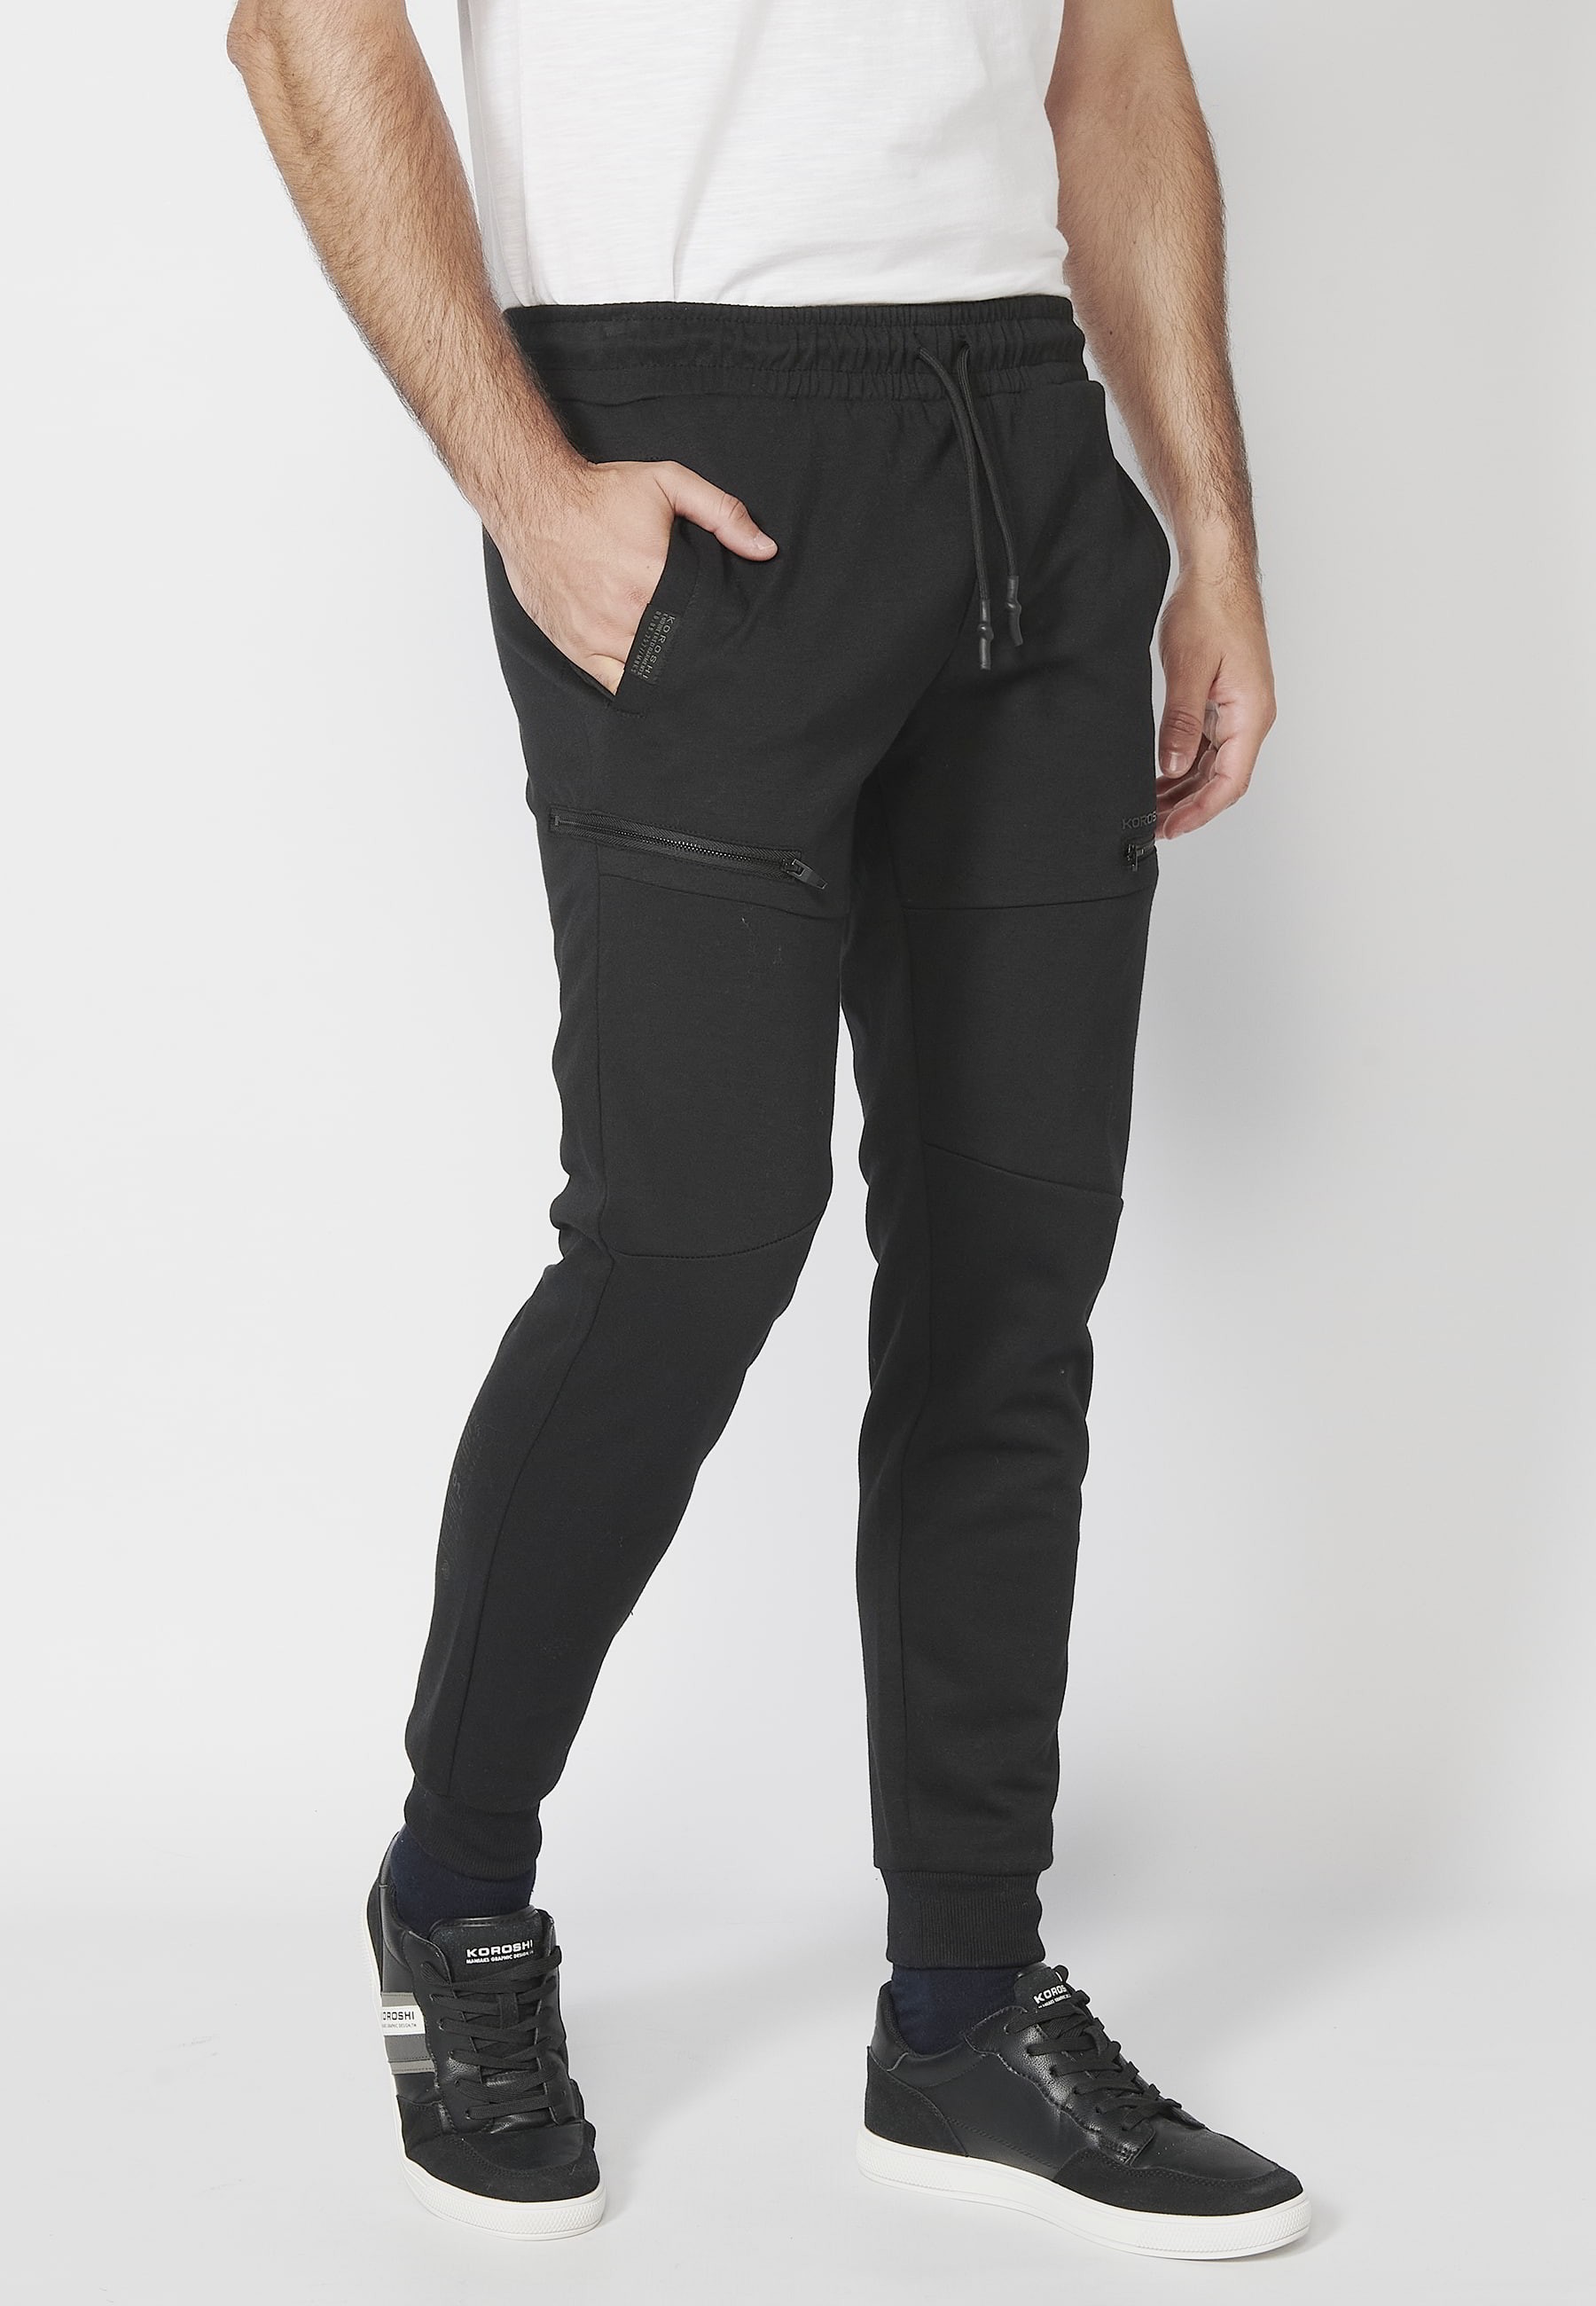 Pantalón Deportivo largo jogger con cintura engomada y cordón con cortes en las rodillas color Negro para Hombre